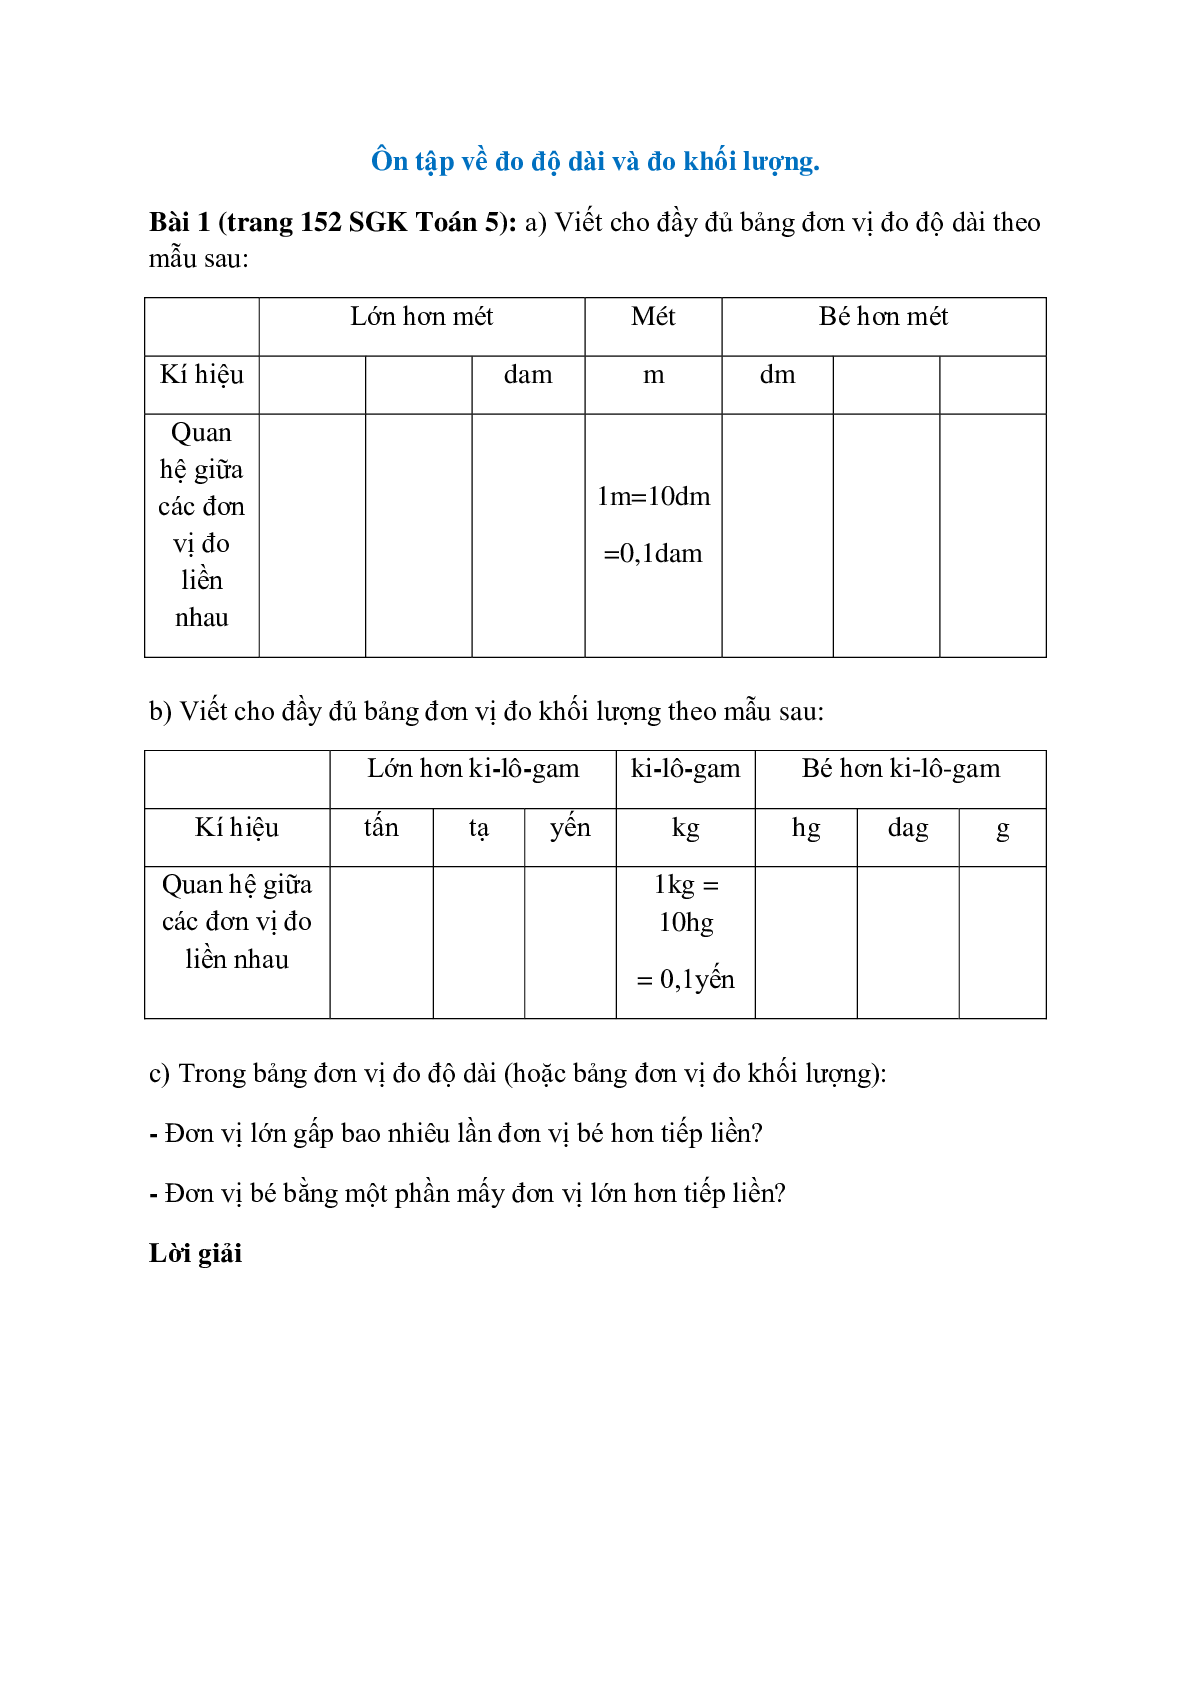 Viết cho đầy đủ bảng đơn vị đo độ dài theo mẫu (trang 1)